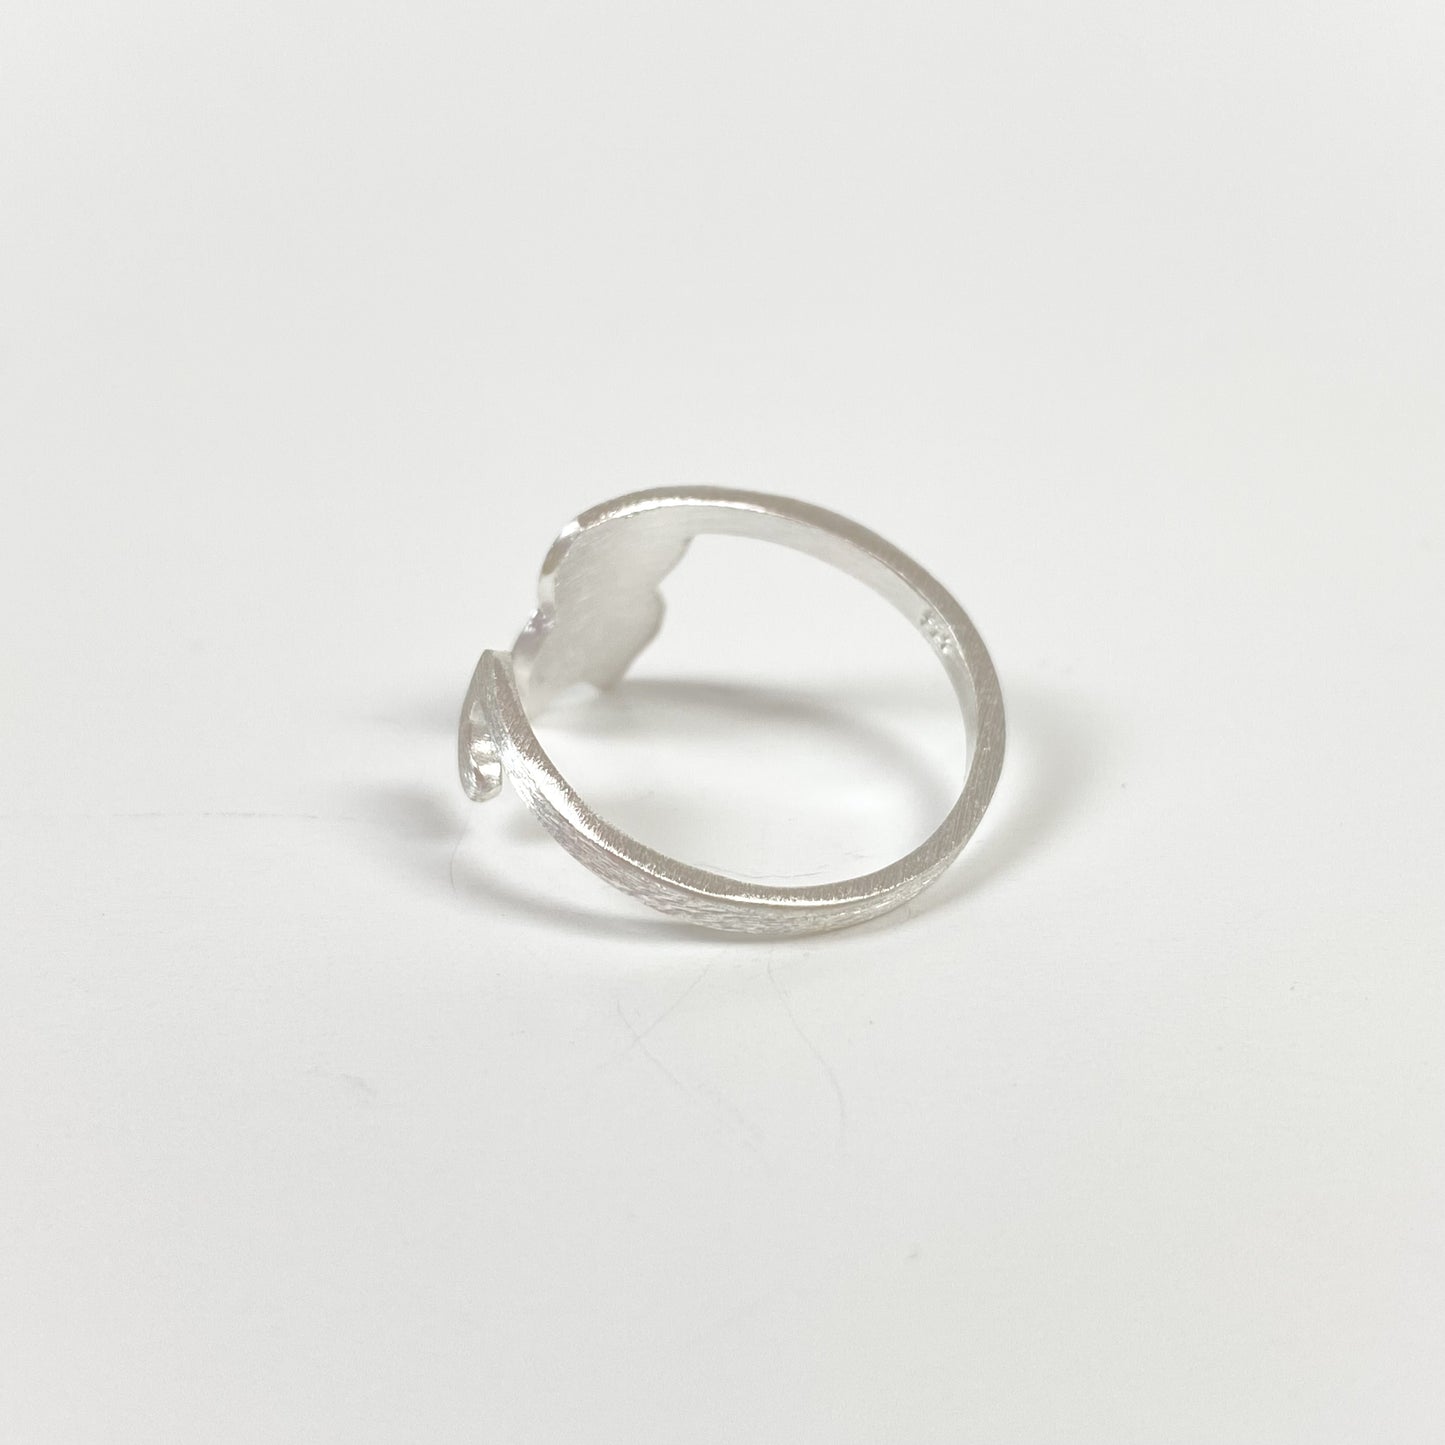 Vintage Adjustable Cat Ring Silver